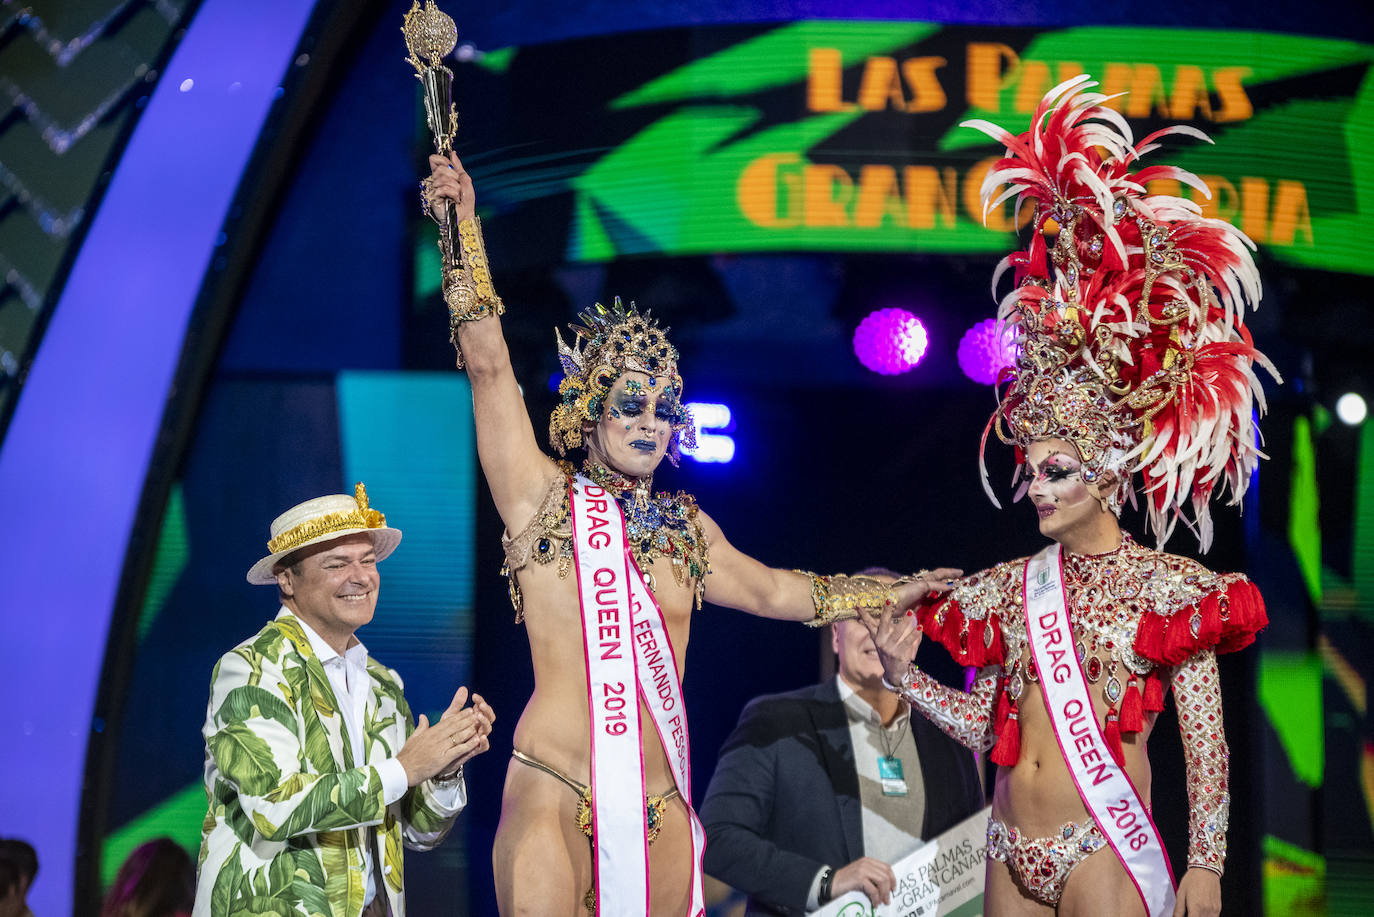 El actual alcalde de la ciudad, Augusto Hidalgo, llevando un atuendo carnavalero.